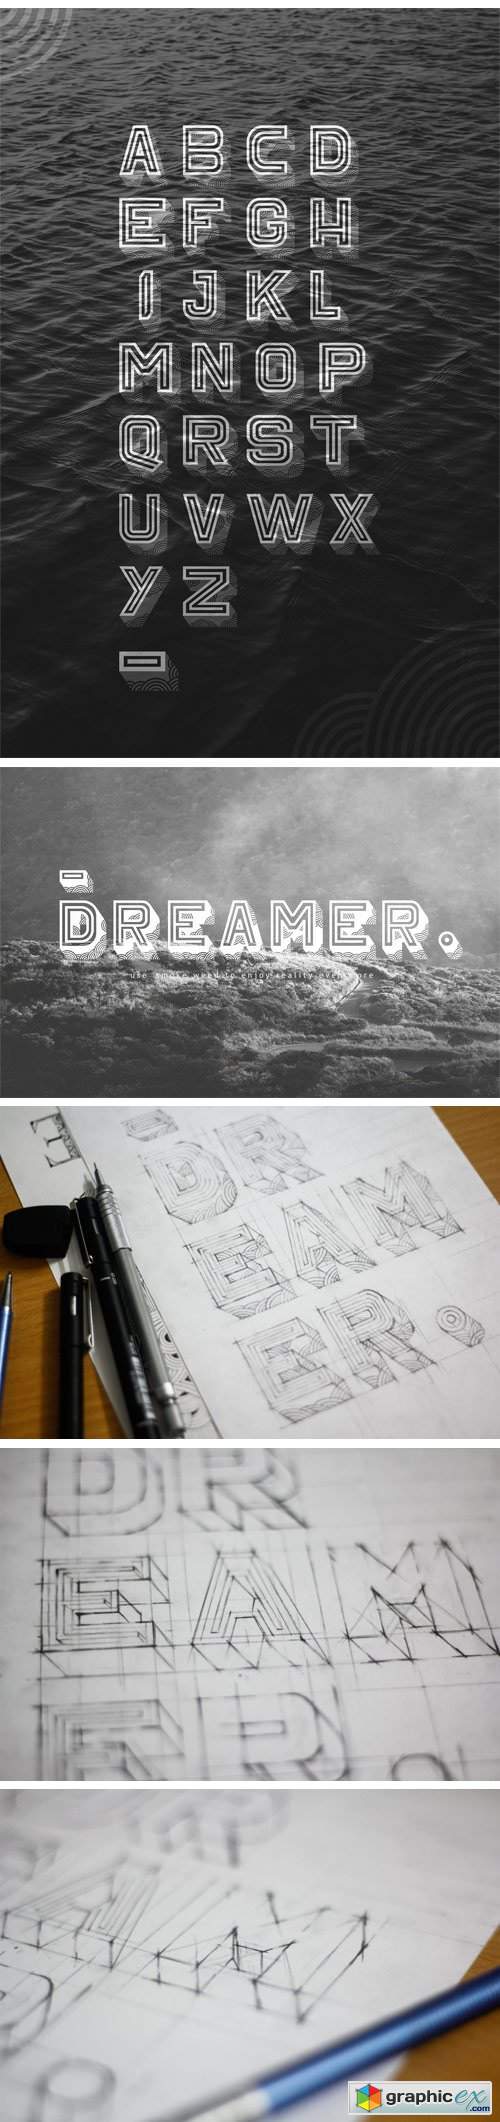 Dreamer Typeface